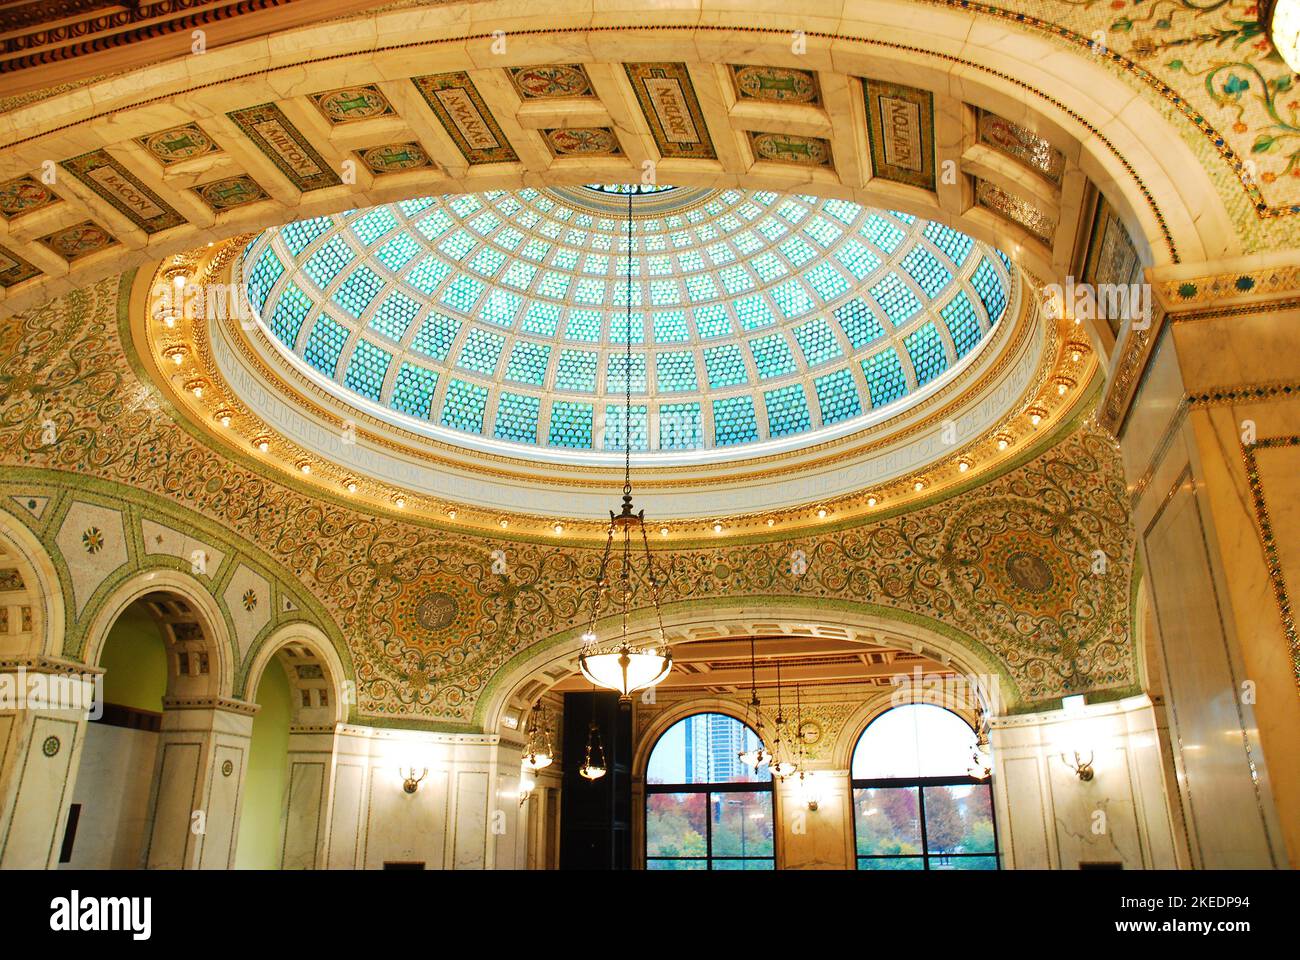 Ein großes, kreisförmiges Tiffany-Buntglasfenster befindet sich über der Atrium-Lobby des historischen Beaux Artes Chicago Cultural Center Stockfoto